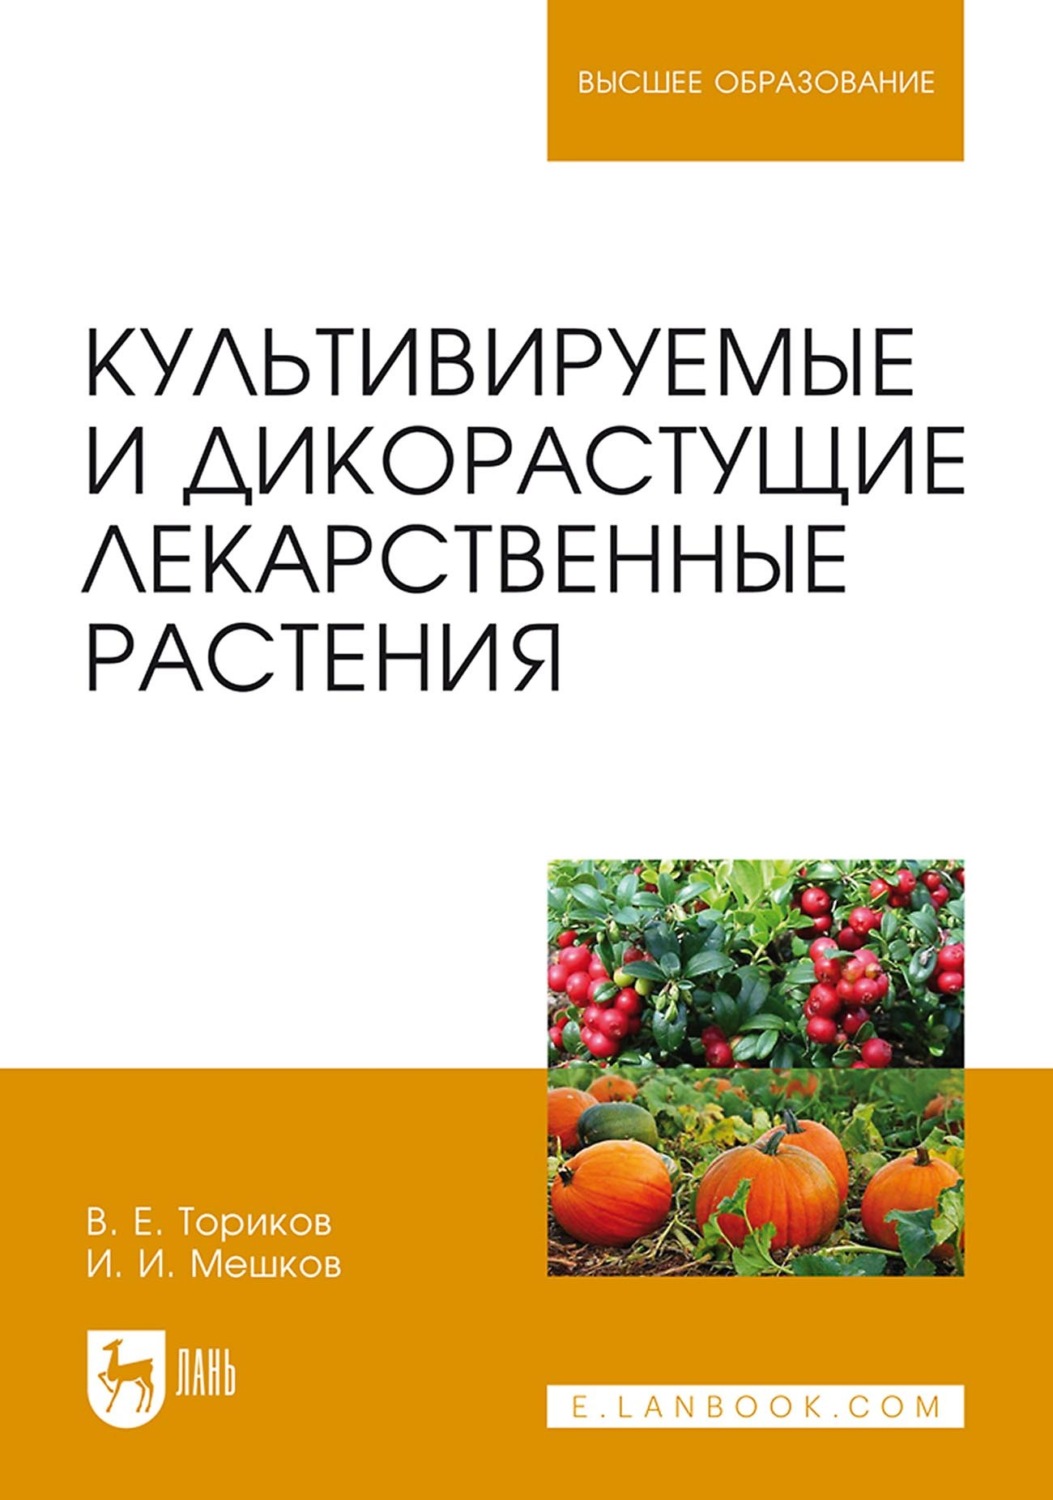 Ториков, в. е. культивируемые и дикорастущие лекарственные растения :